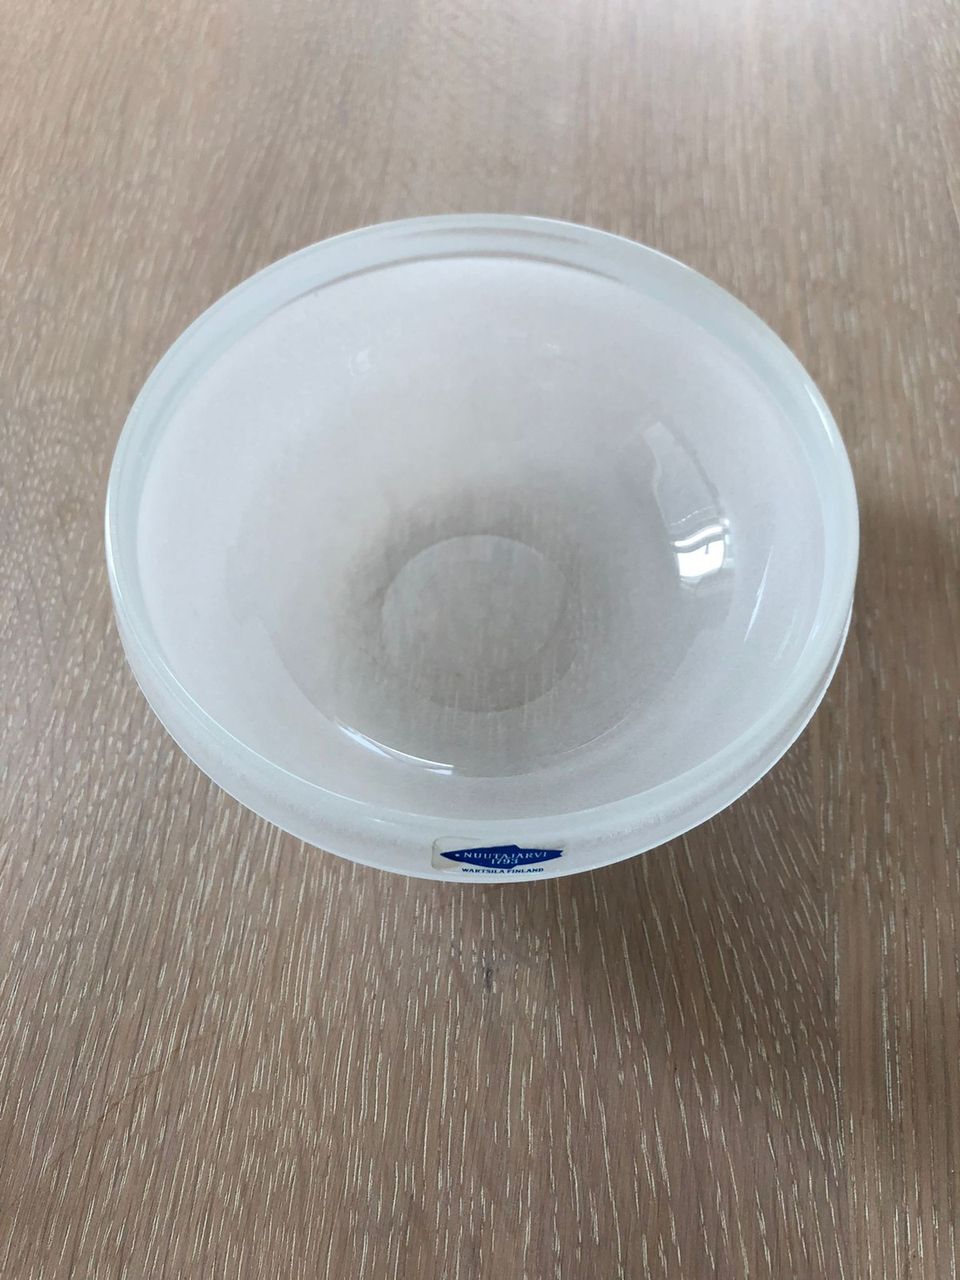 NUUTAJÄRVI Lumikuru-sarjan kristallilasiset jälkiruokakulhot (8 kpl)